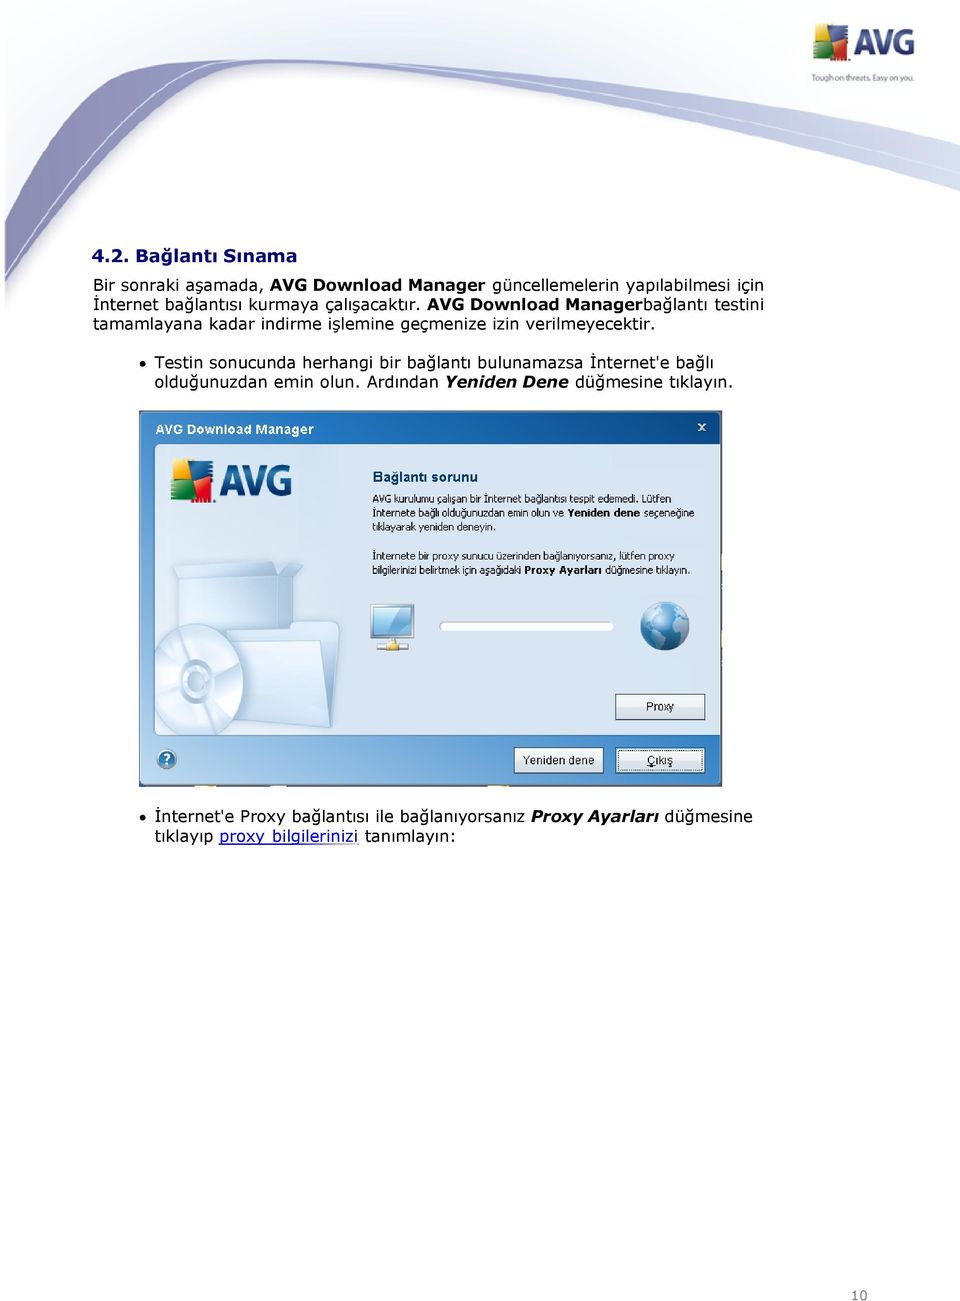 AVG Download Managerbağlantı testini tamamlayana kadar indirme işlemine geçmenize izin verilmeyecektir.